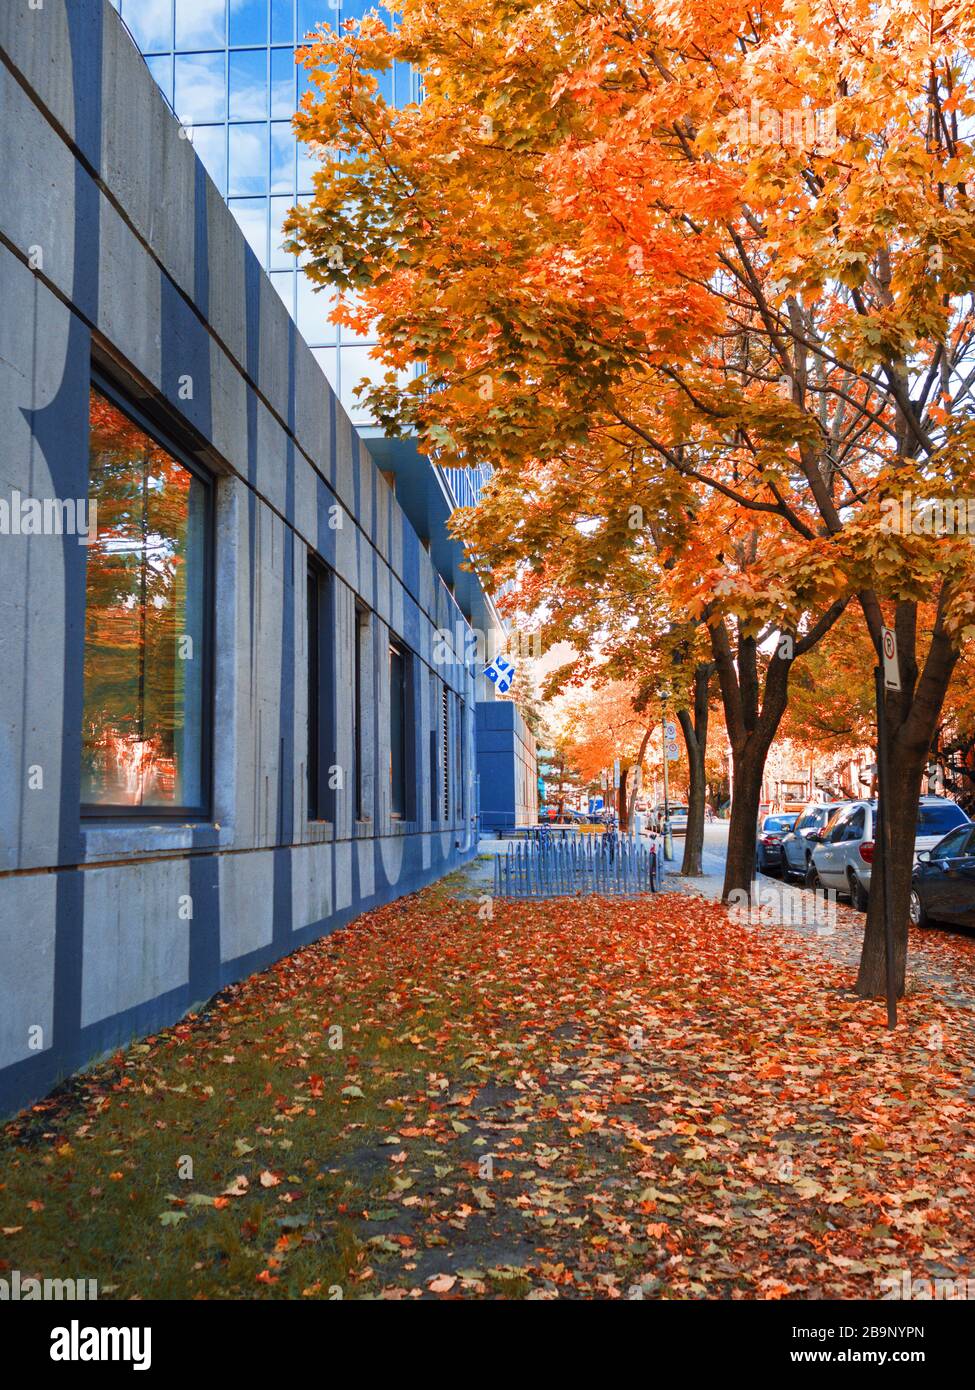 Bâtiment, photo d'automne colorée avec feuilles en chute libre Banque D'Images